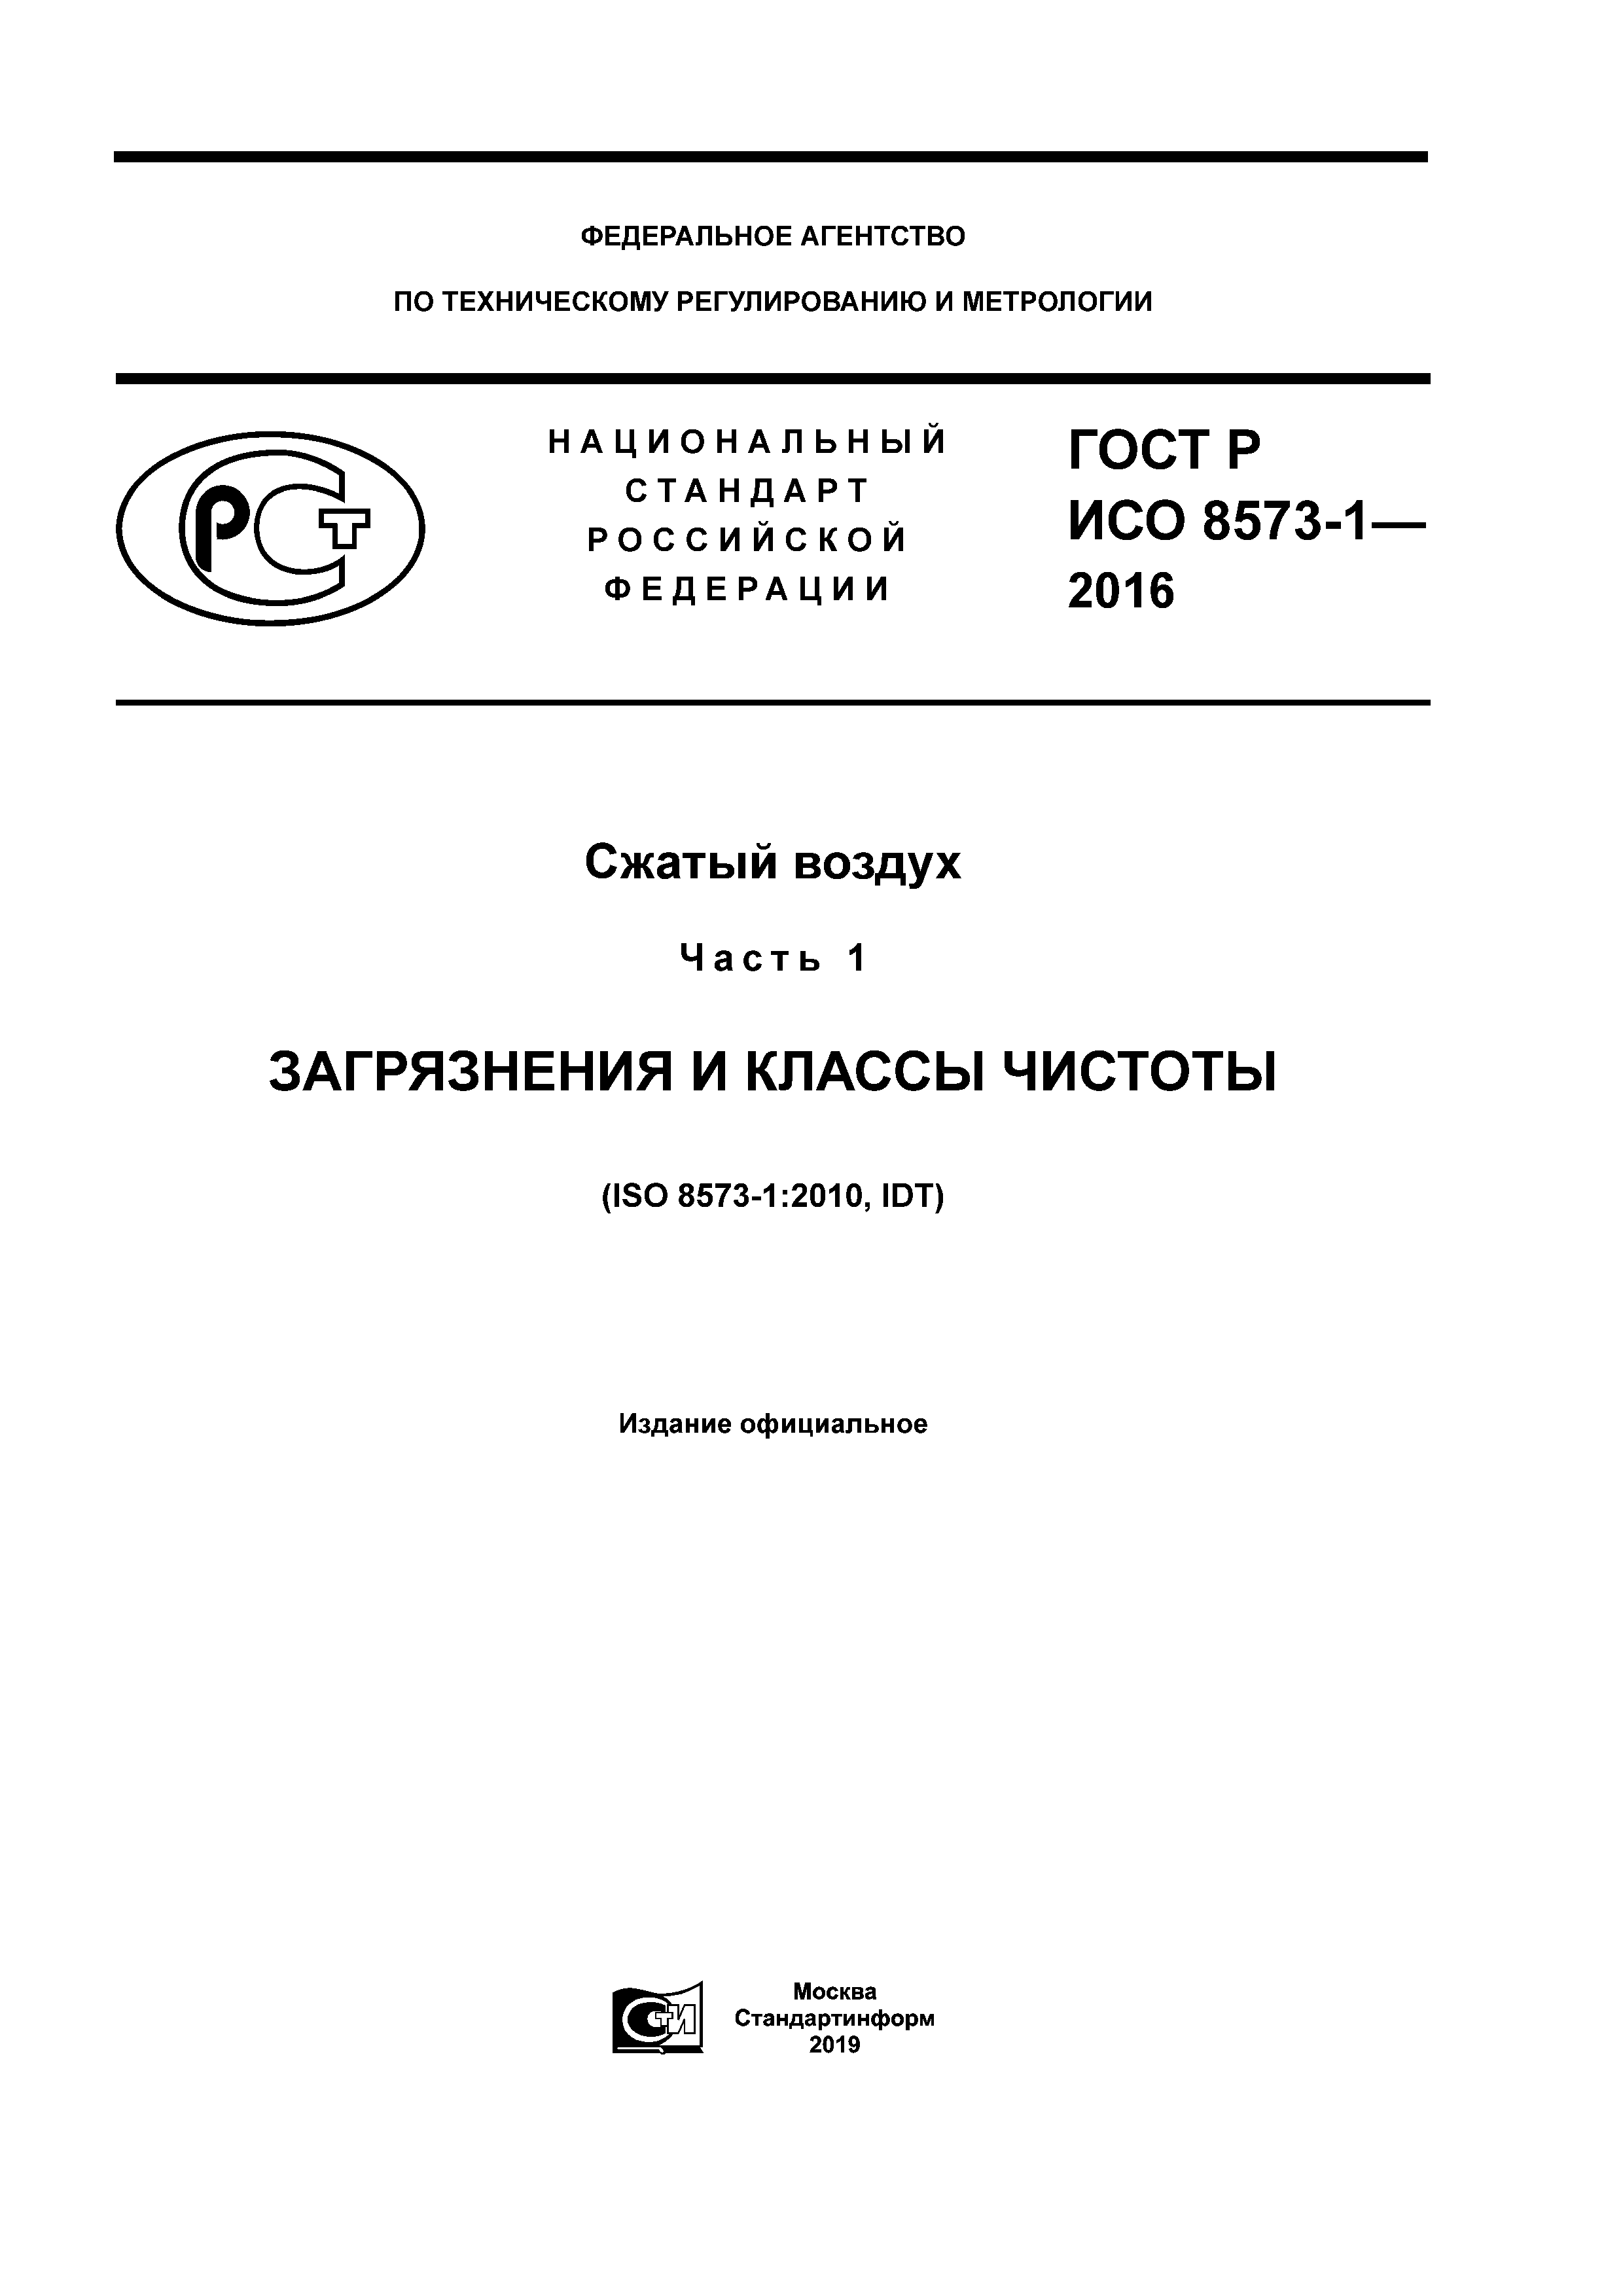 ГОСТ Р ИСО 8573-1-2016